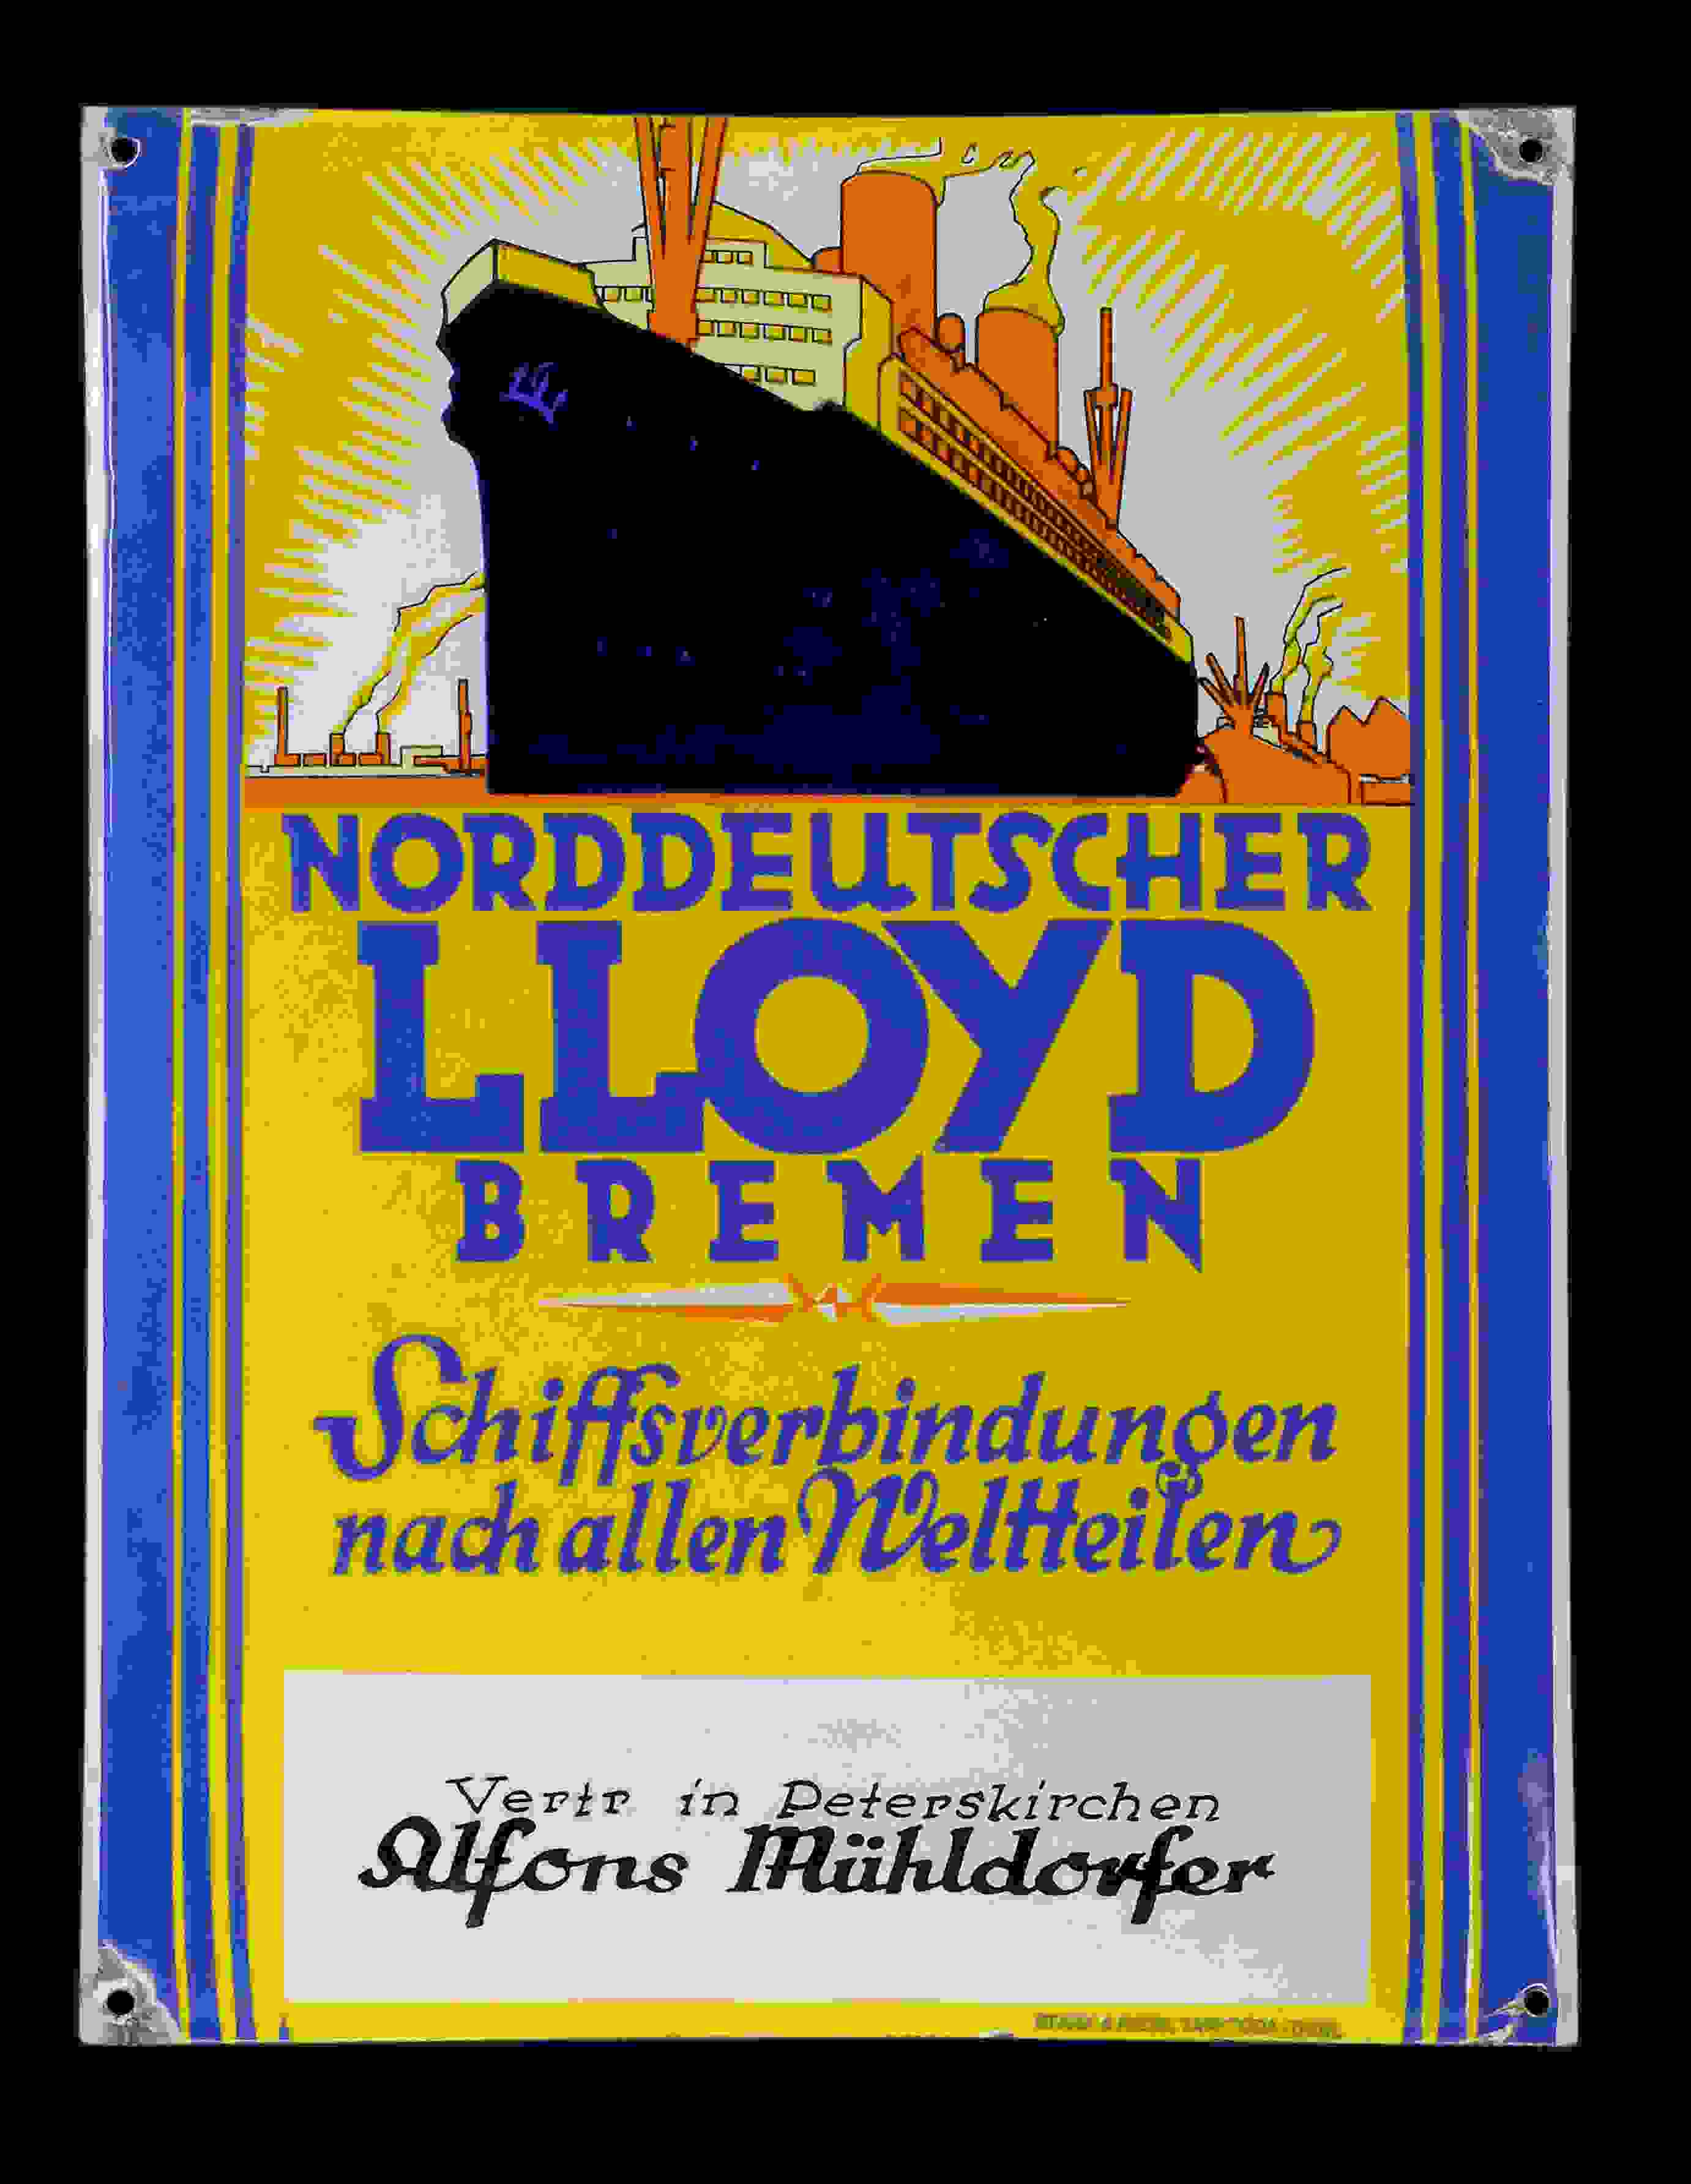 Norddeutscher Lloyd Bremen 